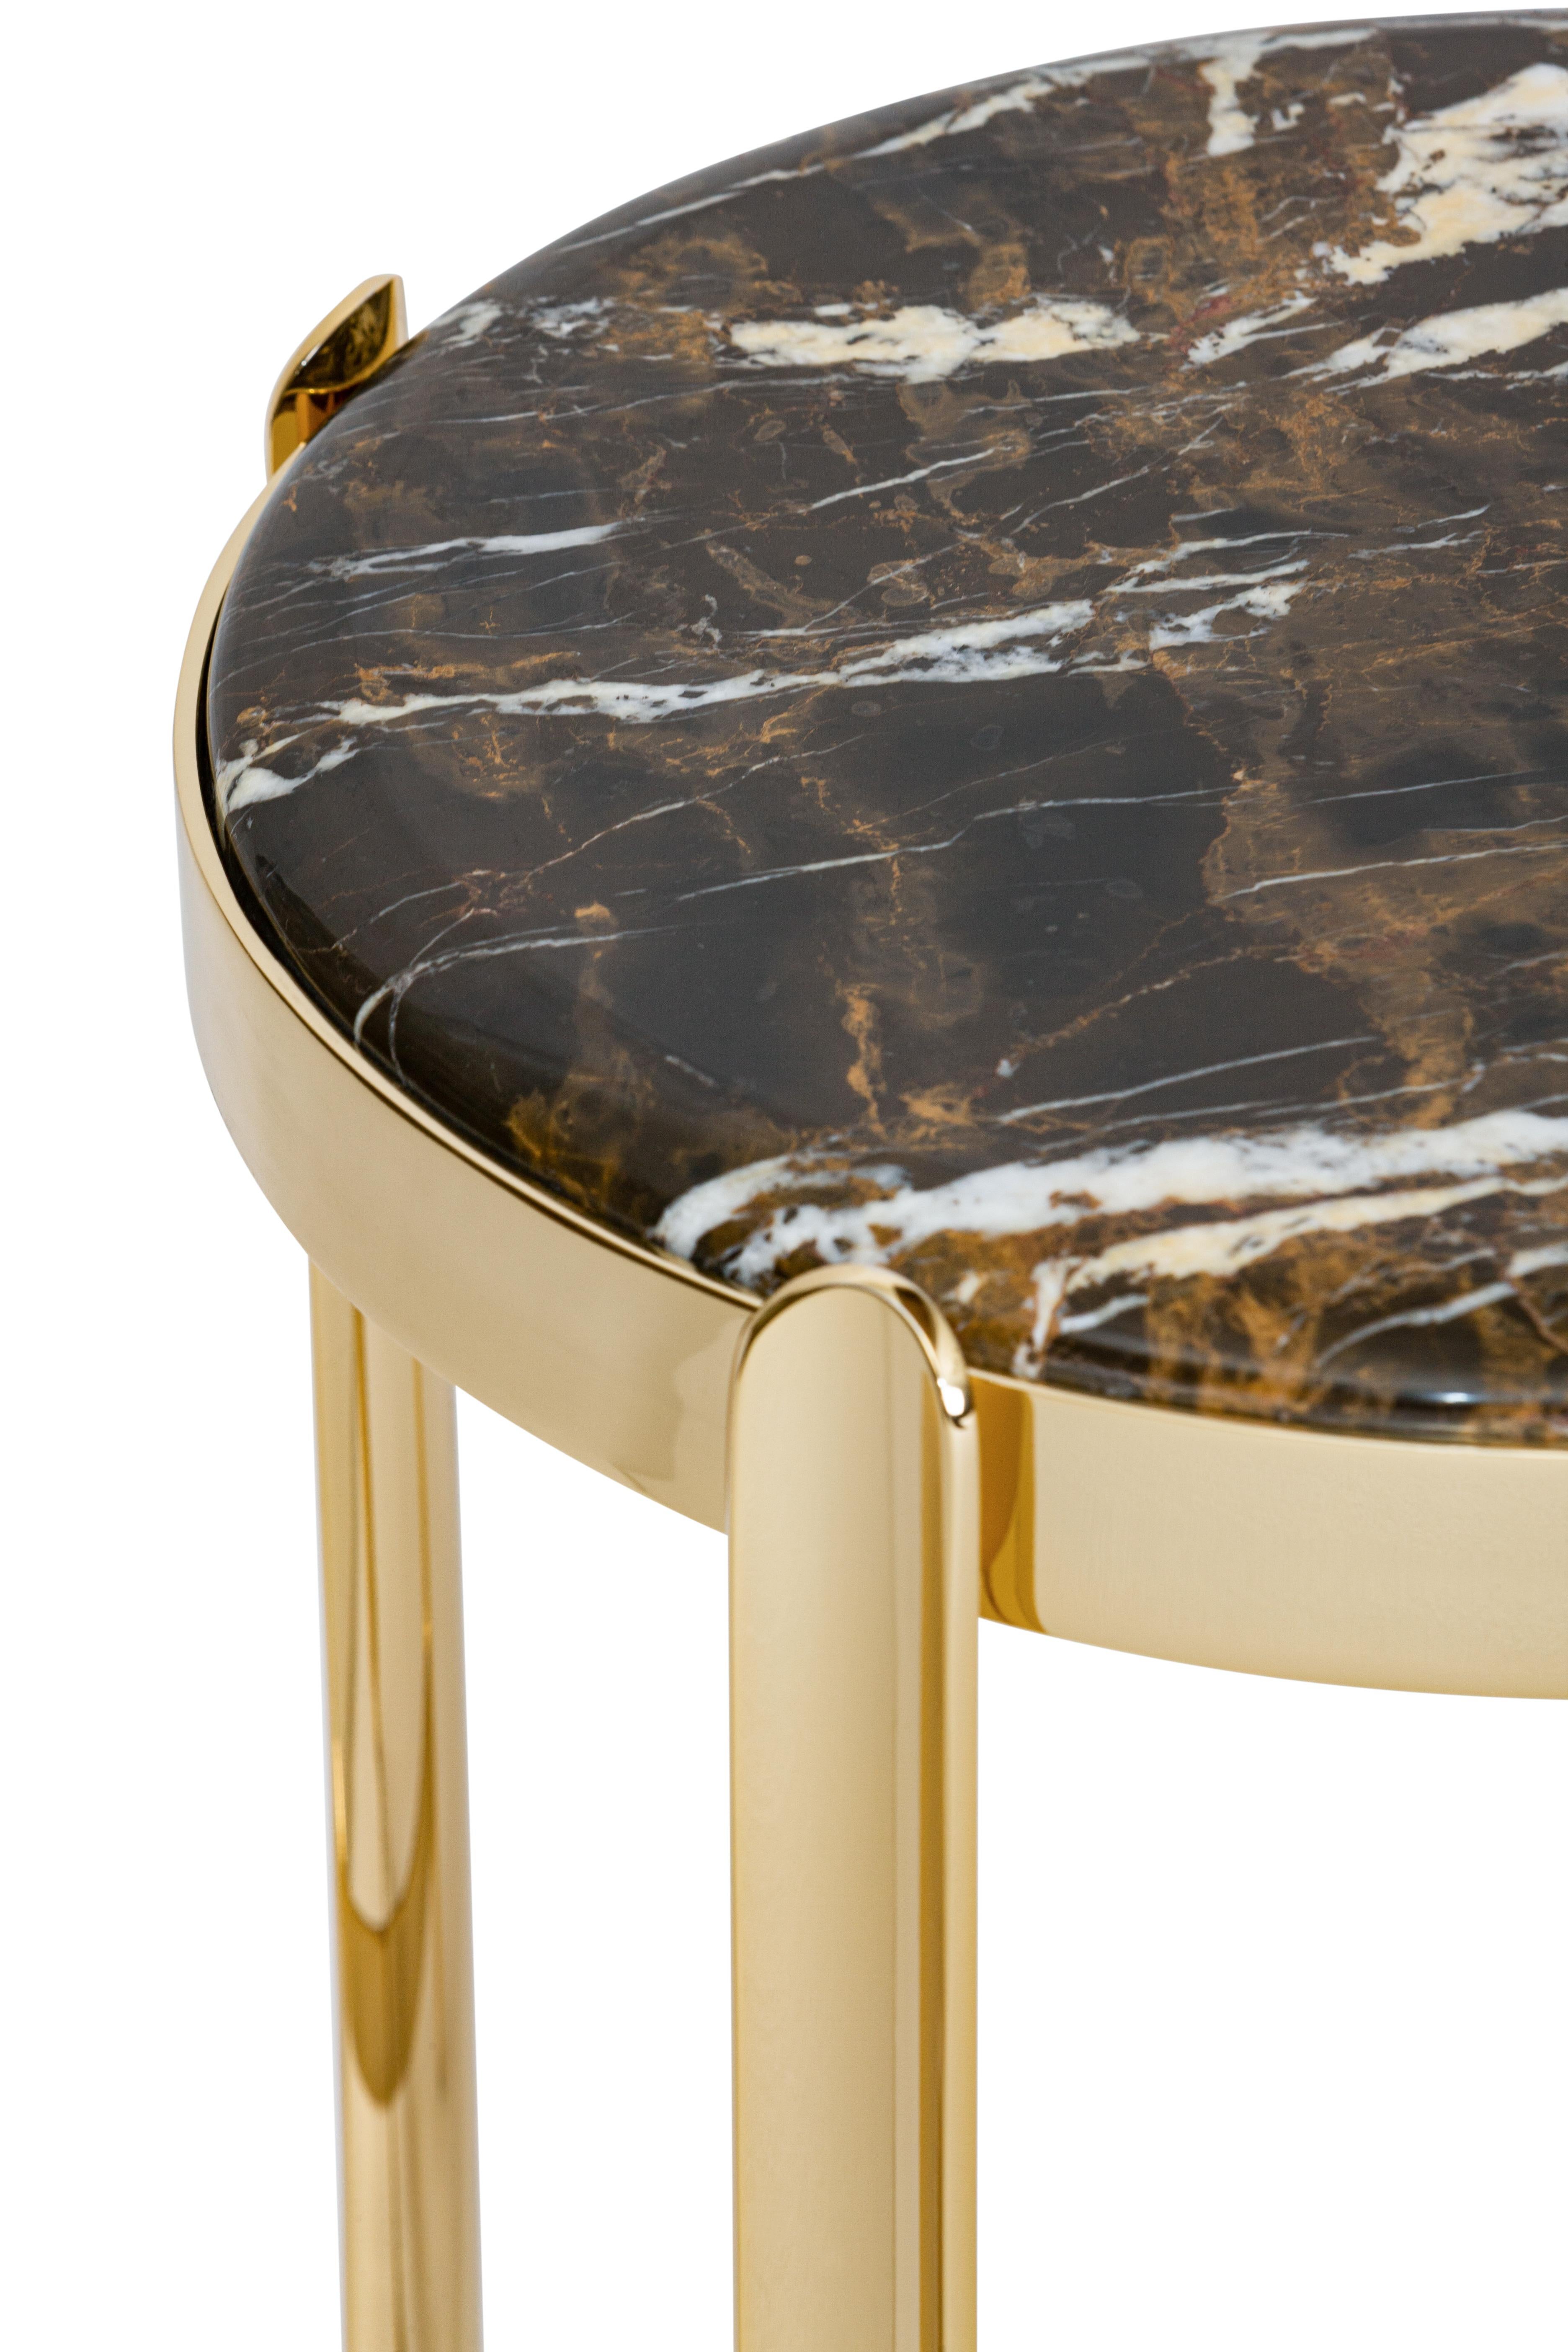 Art Déco du 21ème siècle Elie Saab Maison table d'appoint en marbre noir et or, Italie

Nommées d'après leur position stratégique dans les intérieurs, les tables basses et consoles Zenith ajoutent un glamour raffiné et contemporain à chaque pièce.